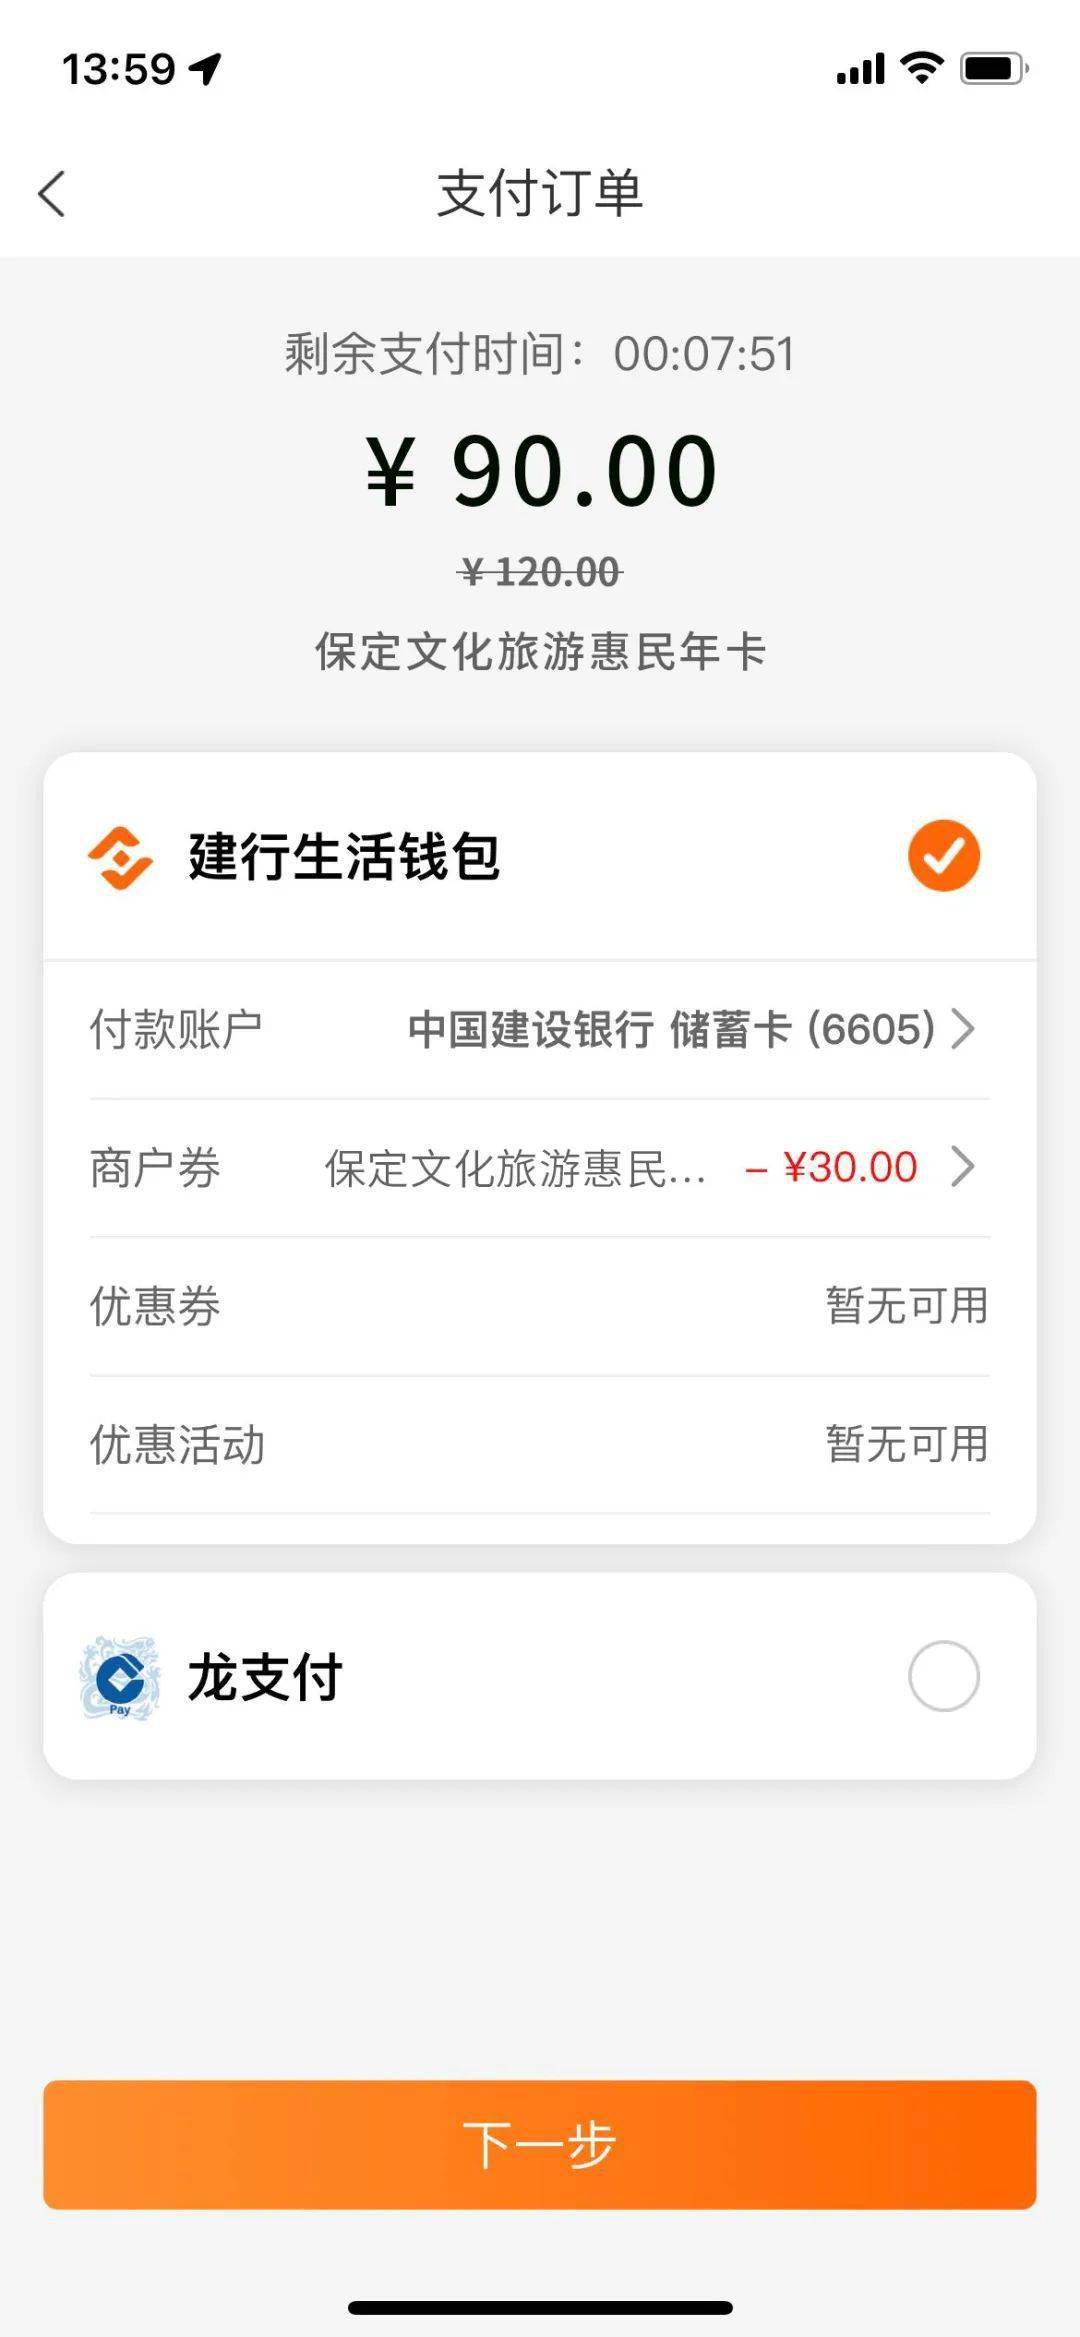 央数钱包下载APP_im钱包app下载_玖富钱包下载APP